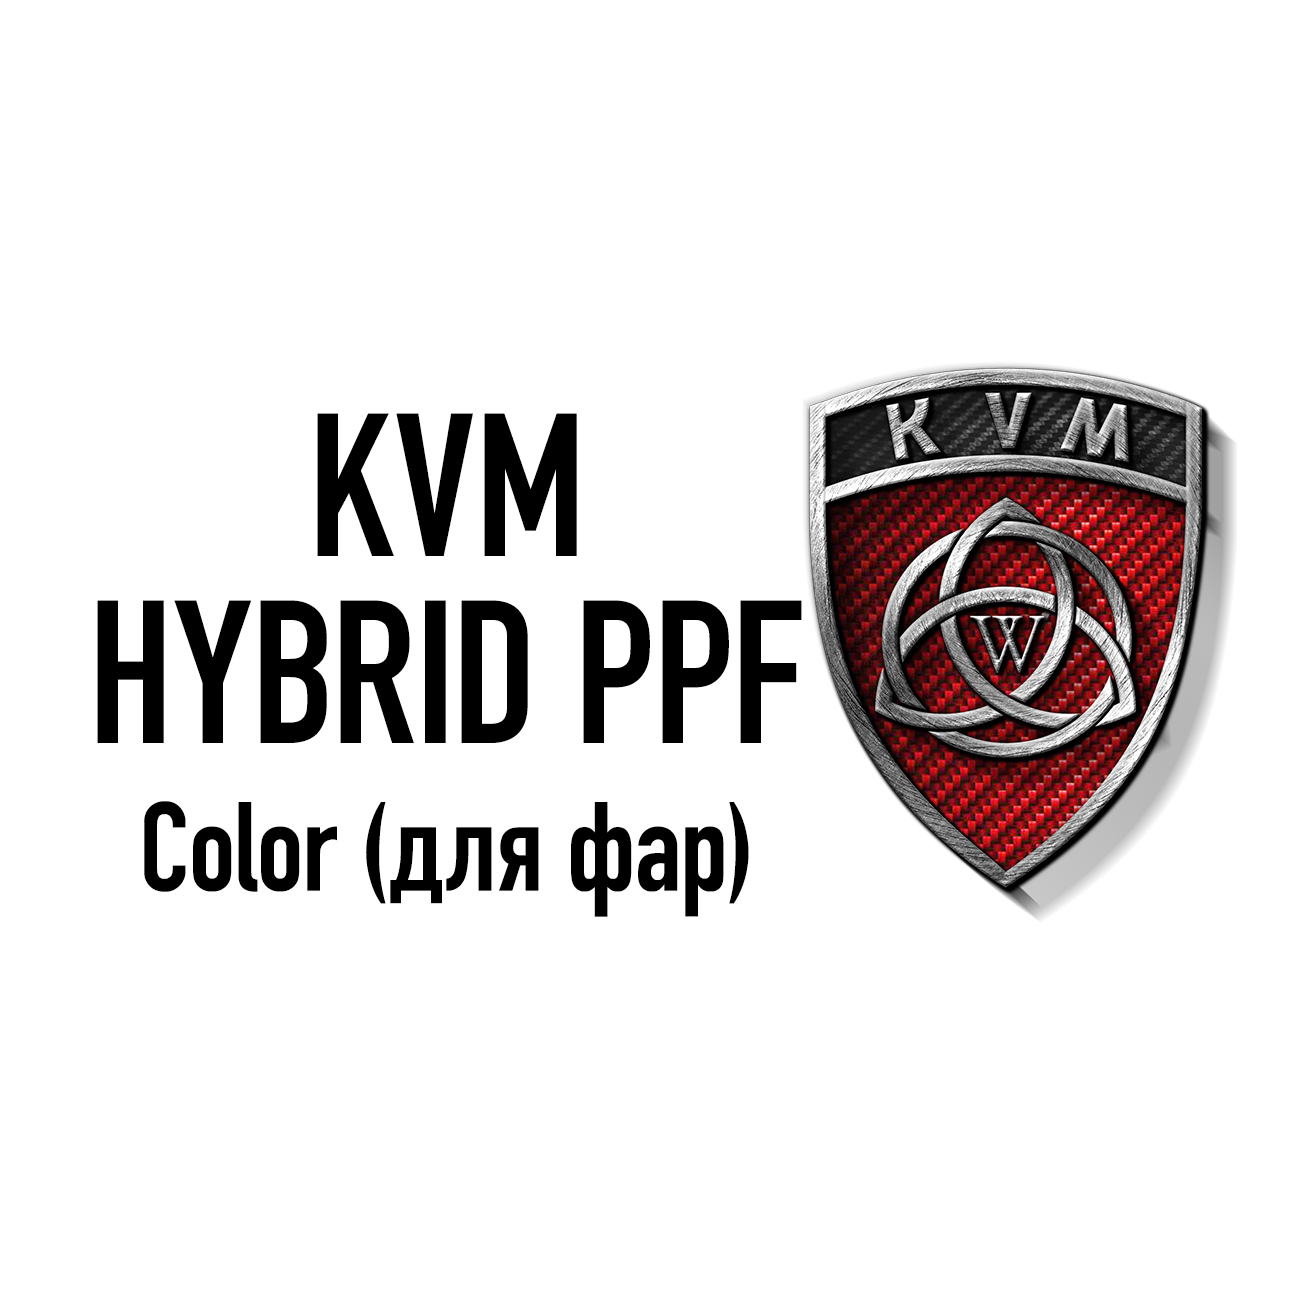 KVM HYBRID COLOR PPF